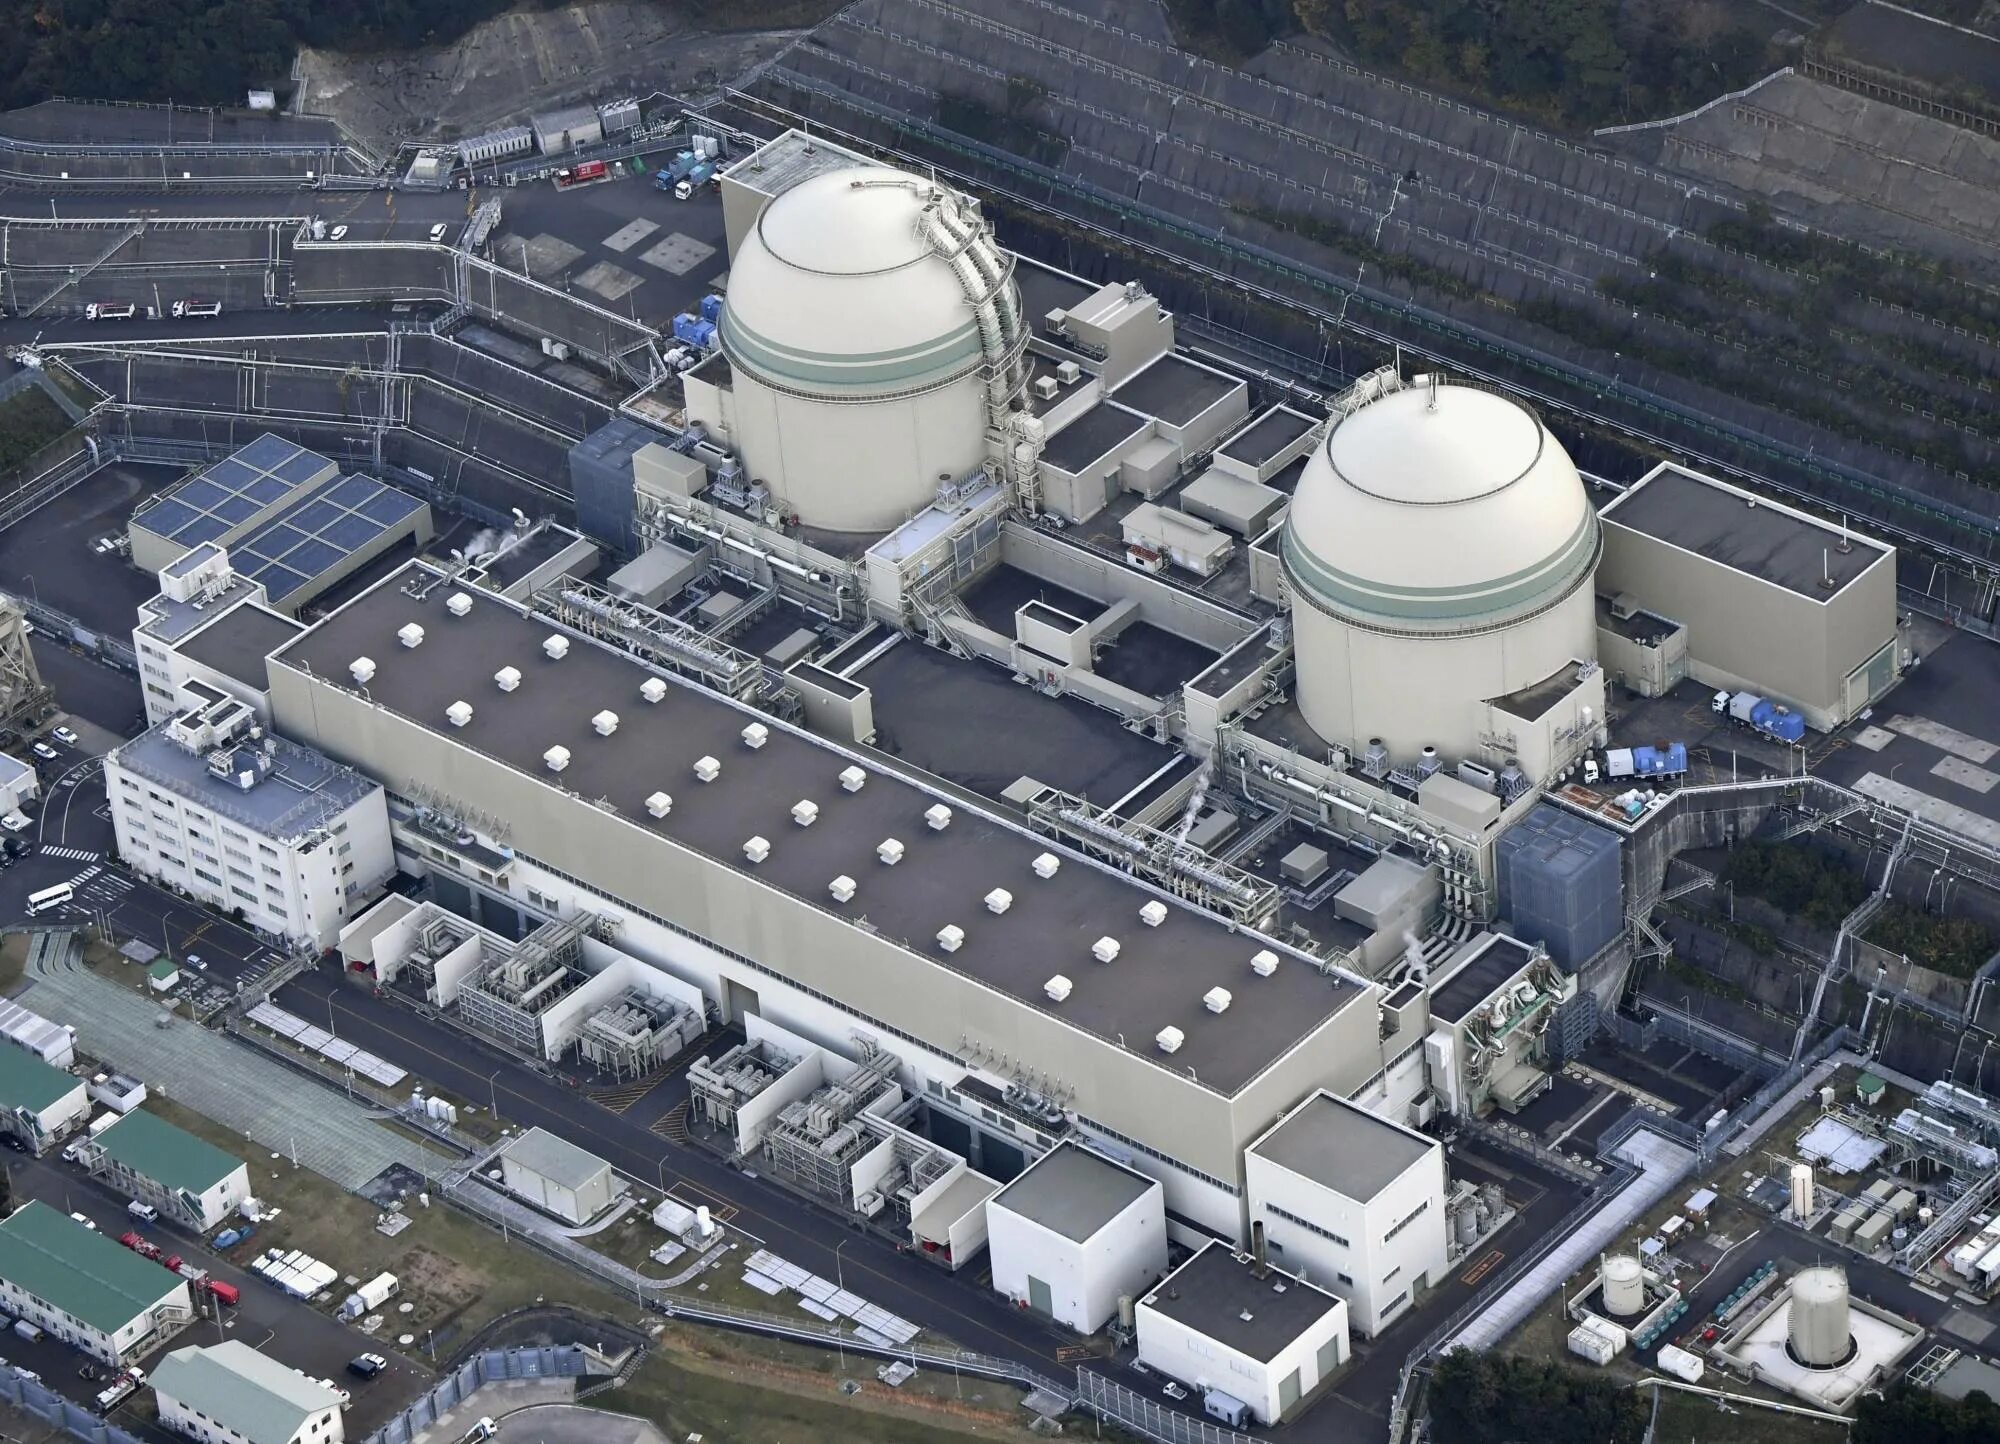 Останов аэс. АЭС Такахама. Атомный реактор в Японии. Реактор 4 энергоблока ЧАЭС. Крышка реактора 4 энергоблока ЧАЭС.